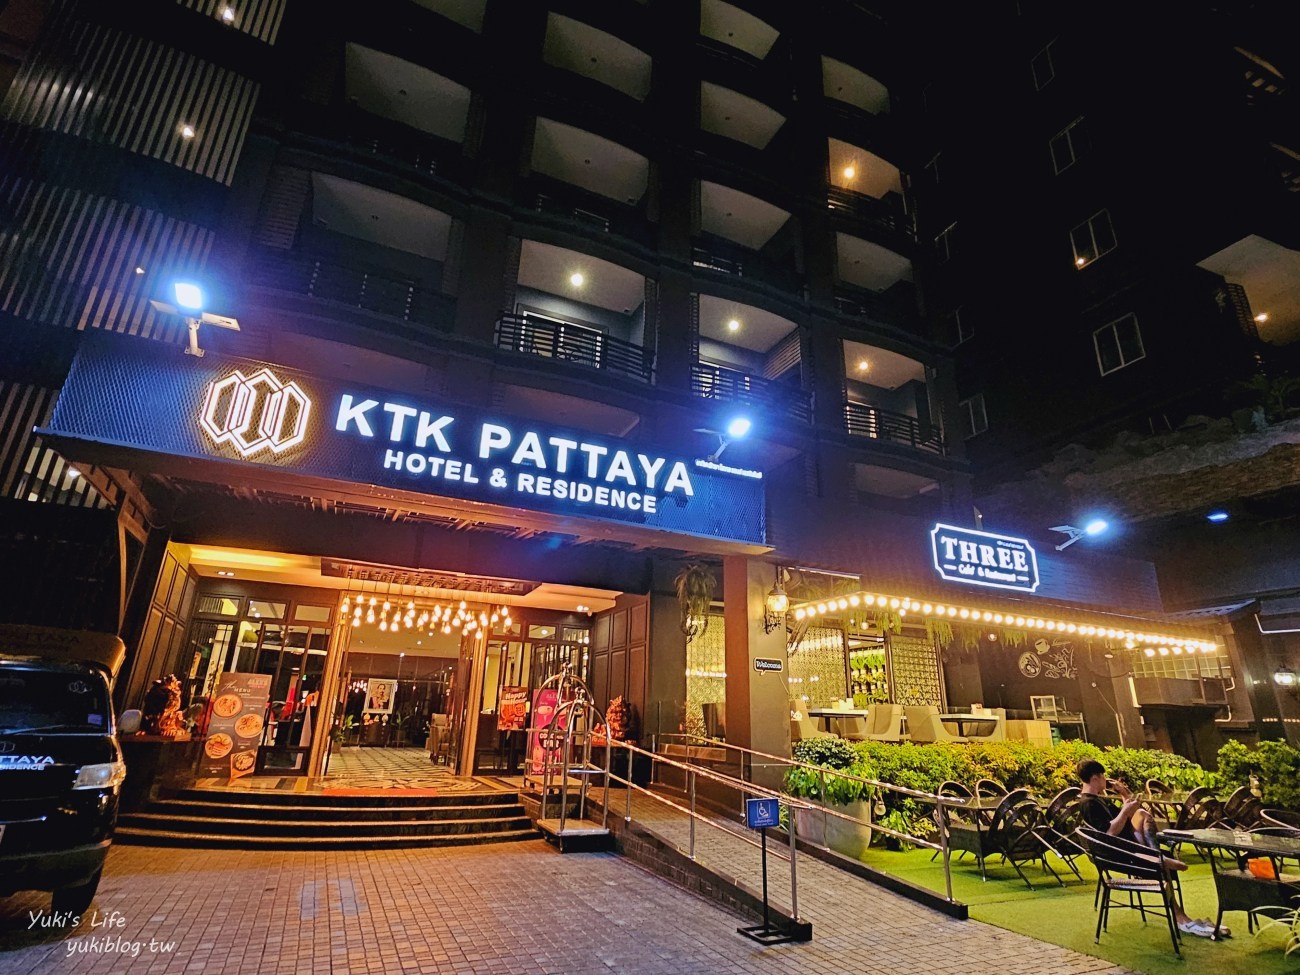 泰國❘芭達雅平價住宿❘芭達雅KTK公寓式飯店~高CP值還有小廚房 (KTK Pattaya Hotel & Residence) - yuki.tw